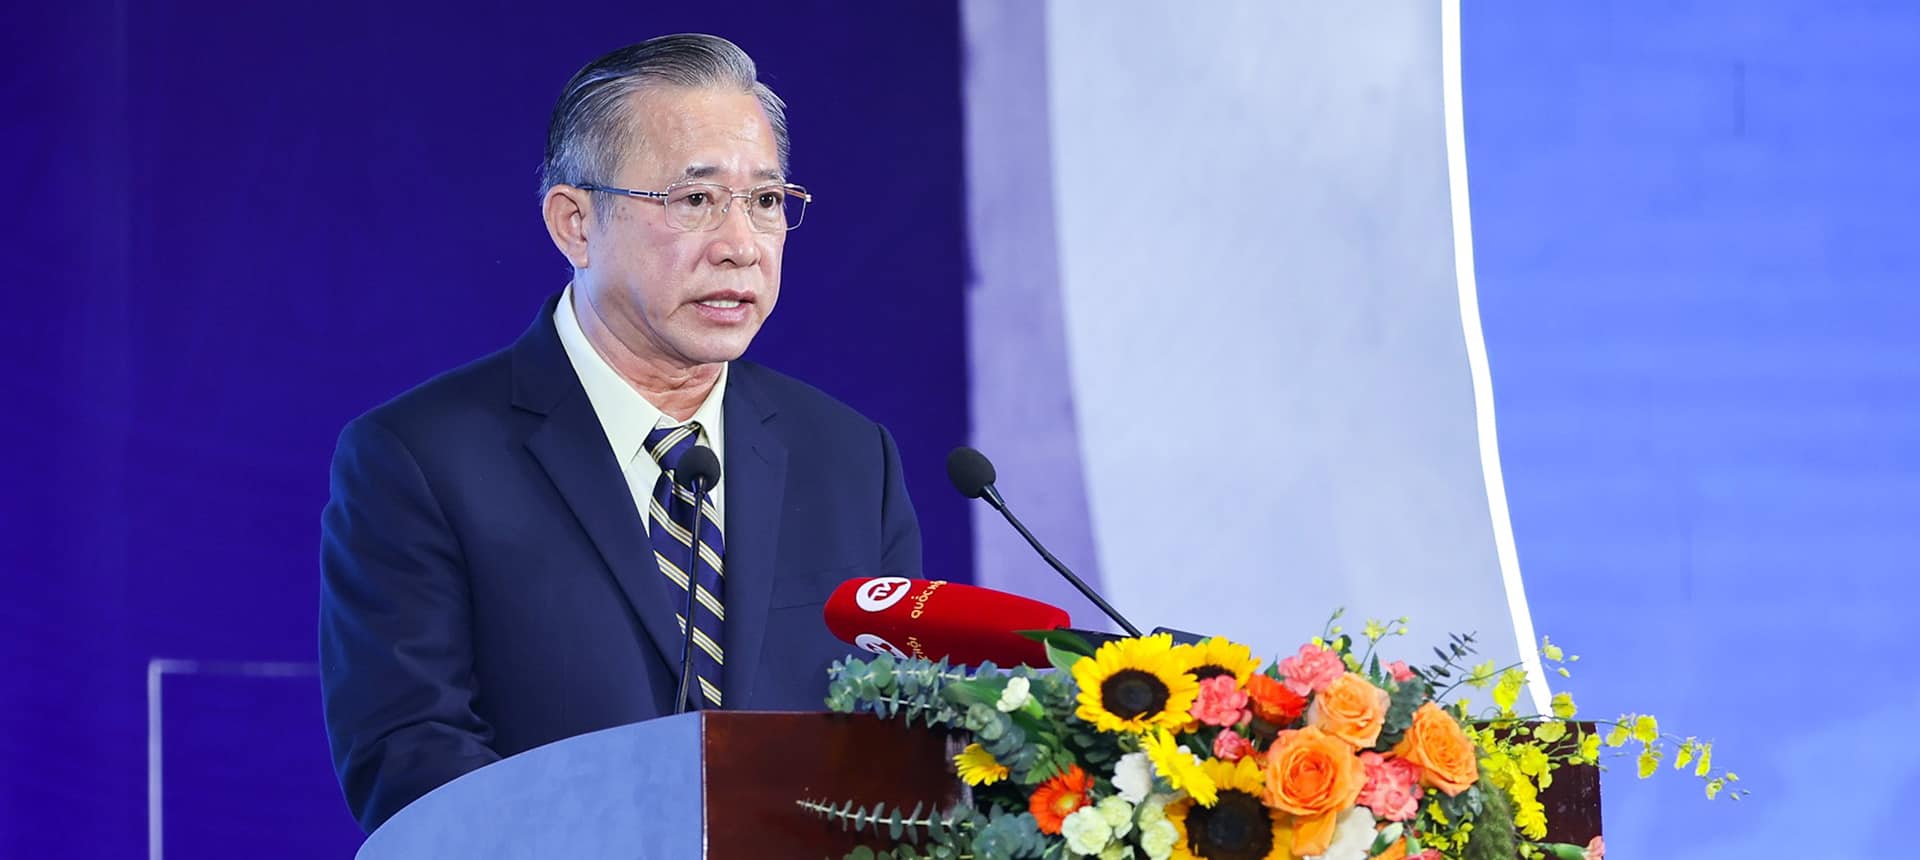 Tổng Giám đốc THACO Phạm Văn Tài cho biết việc ứng dụng sáng kiến, cải tiến vào thực tiễn sản xuất, giúp tiết kiệm hơn 70 tỷ đồng mỗi năm